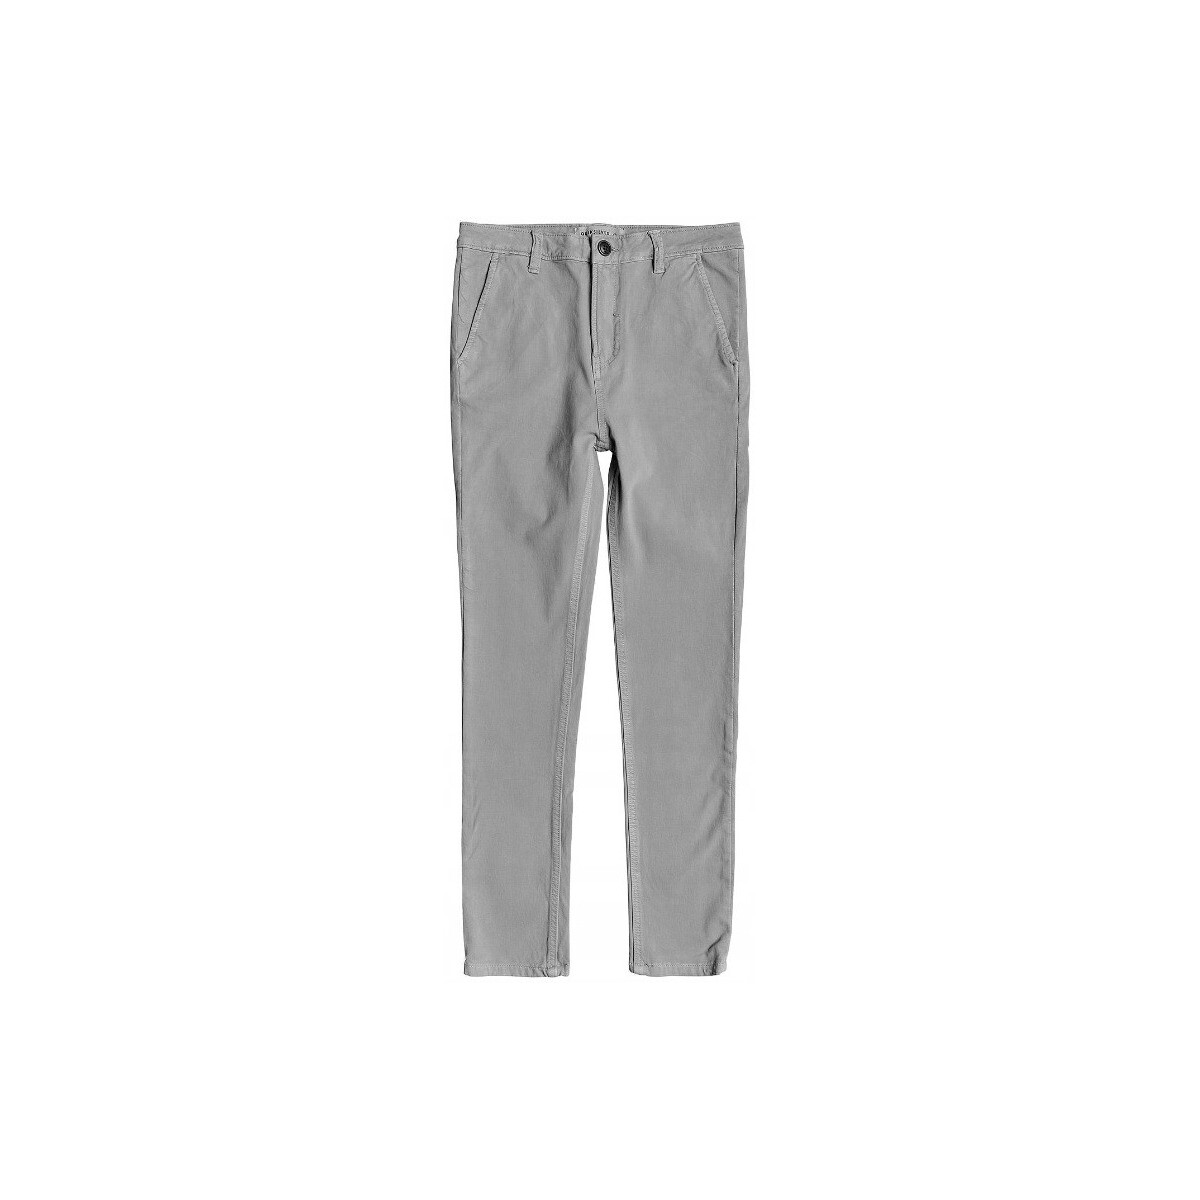 Vêtements Garçon Jeans Quiksilver Junior - Pantalon - gris Autres